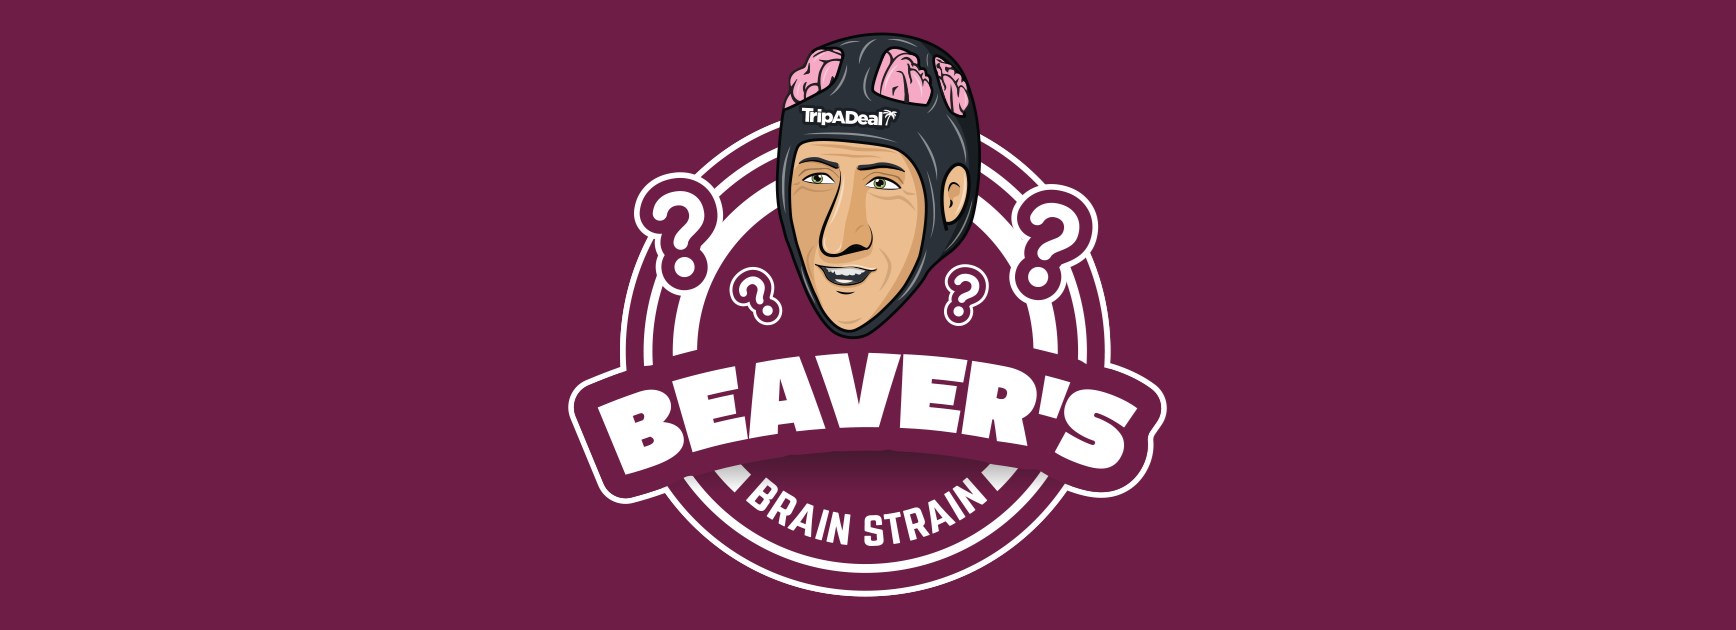 Get ready for 'Beaver’s Brain Strain'